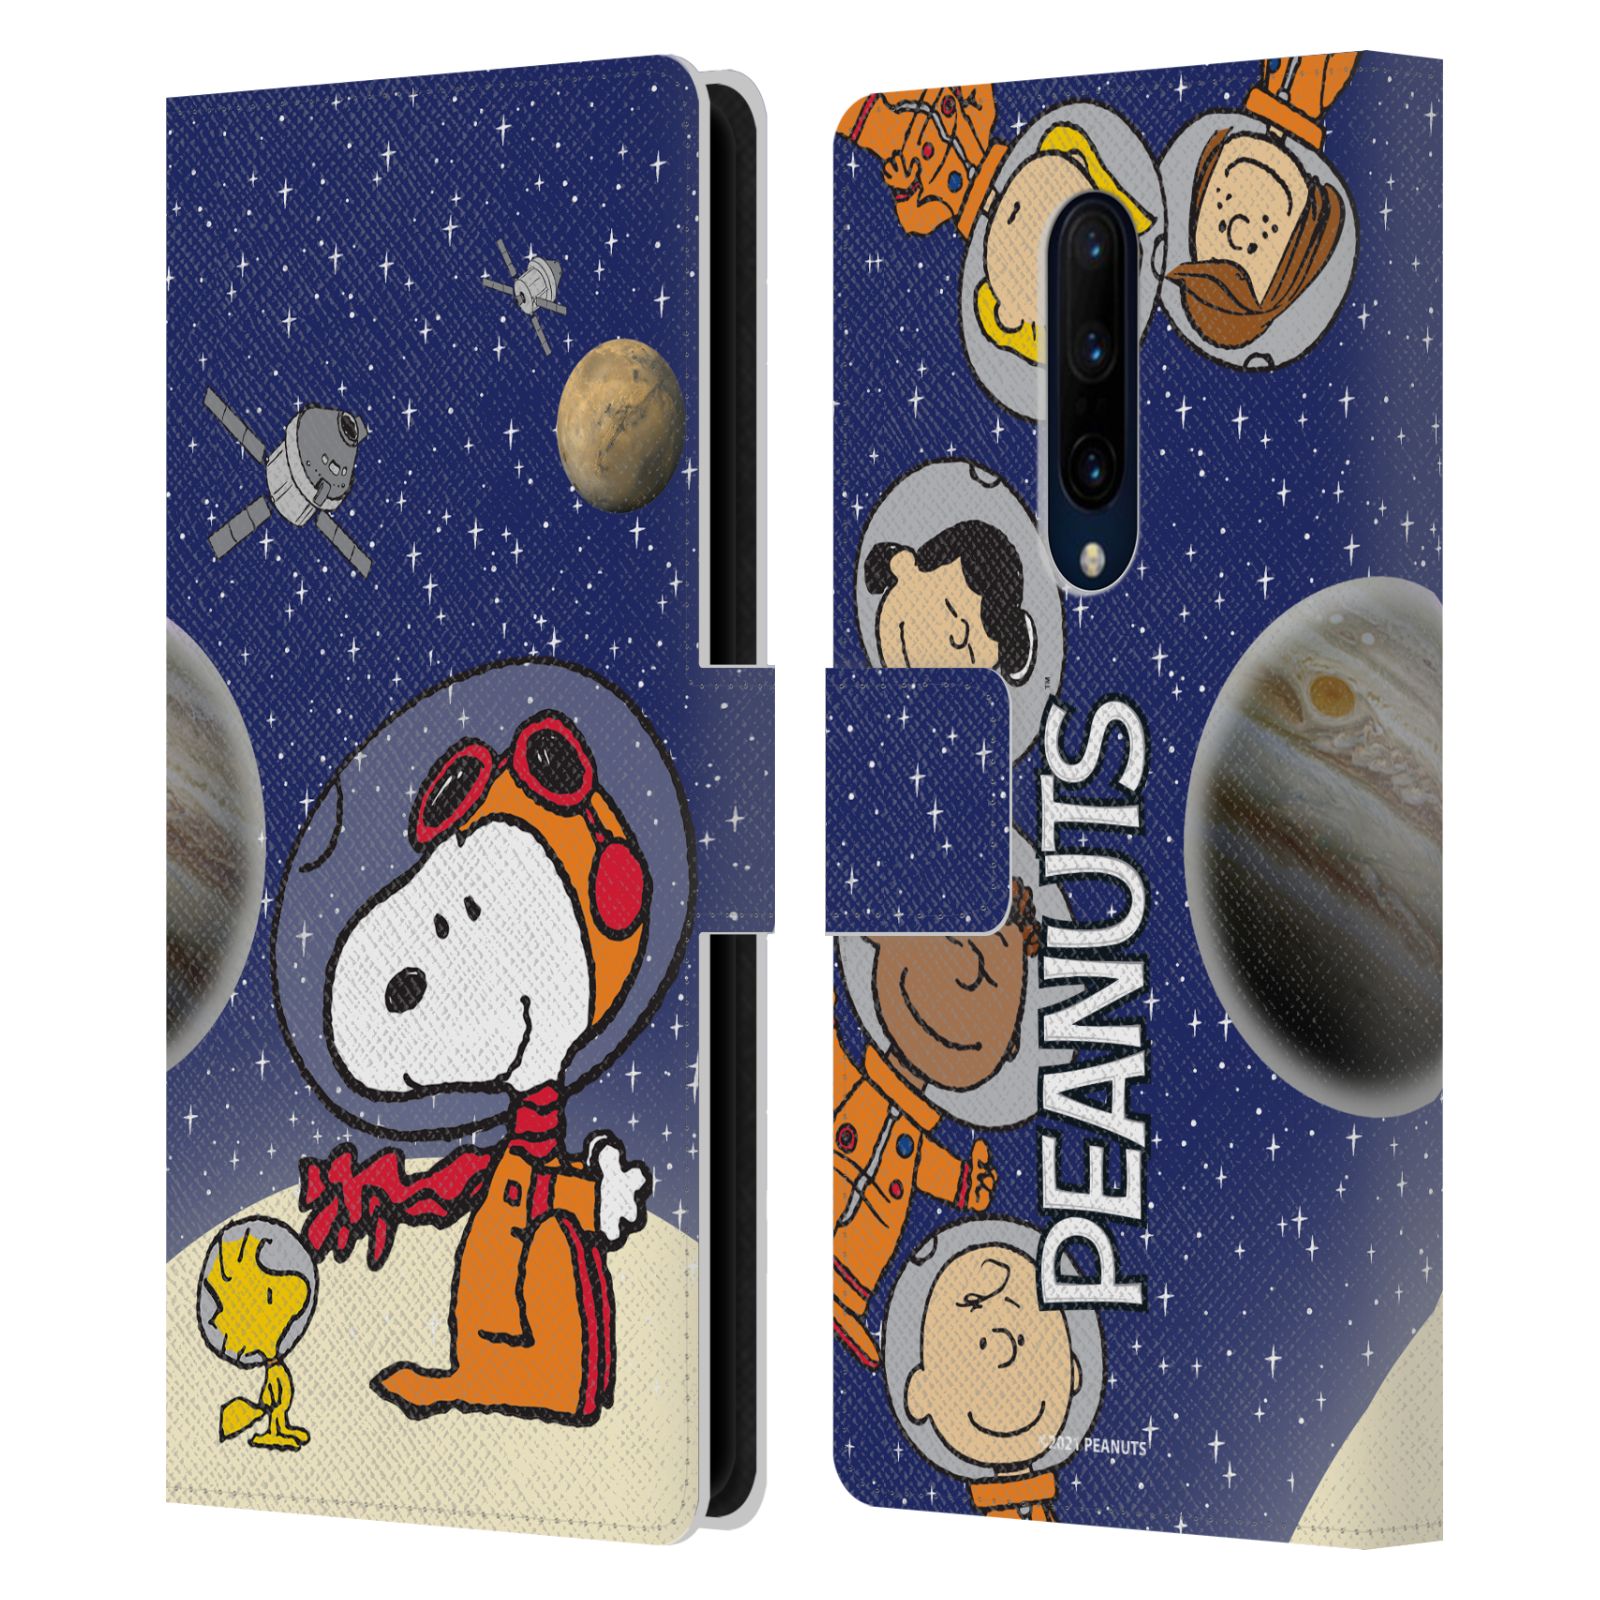 Pouzdro na mobil OnePlus 7 PRO  - HEAD CASE - Peanuts Snoopy ve vesmíru 2